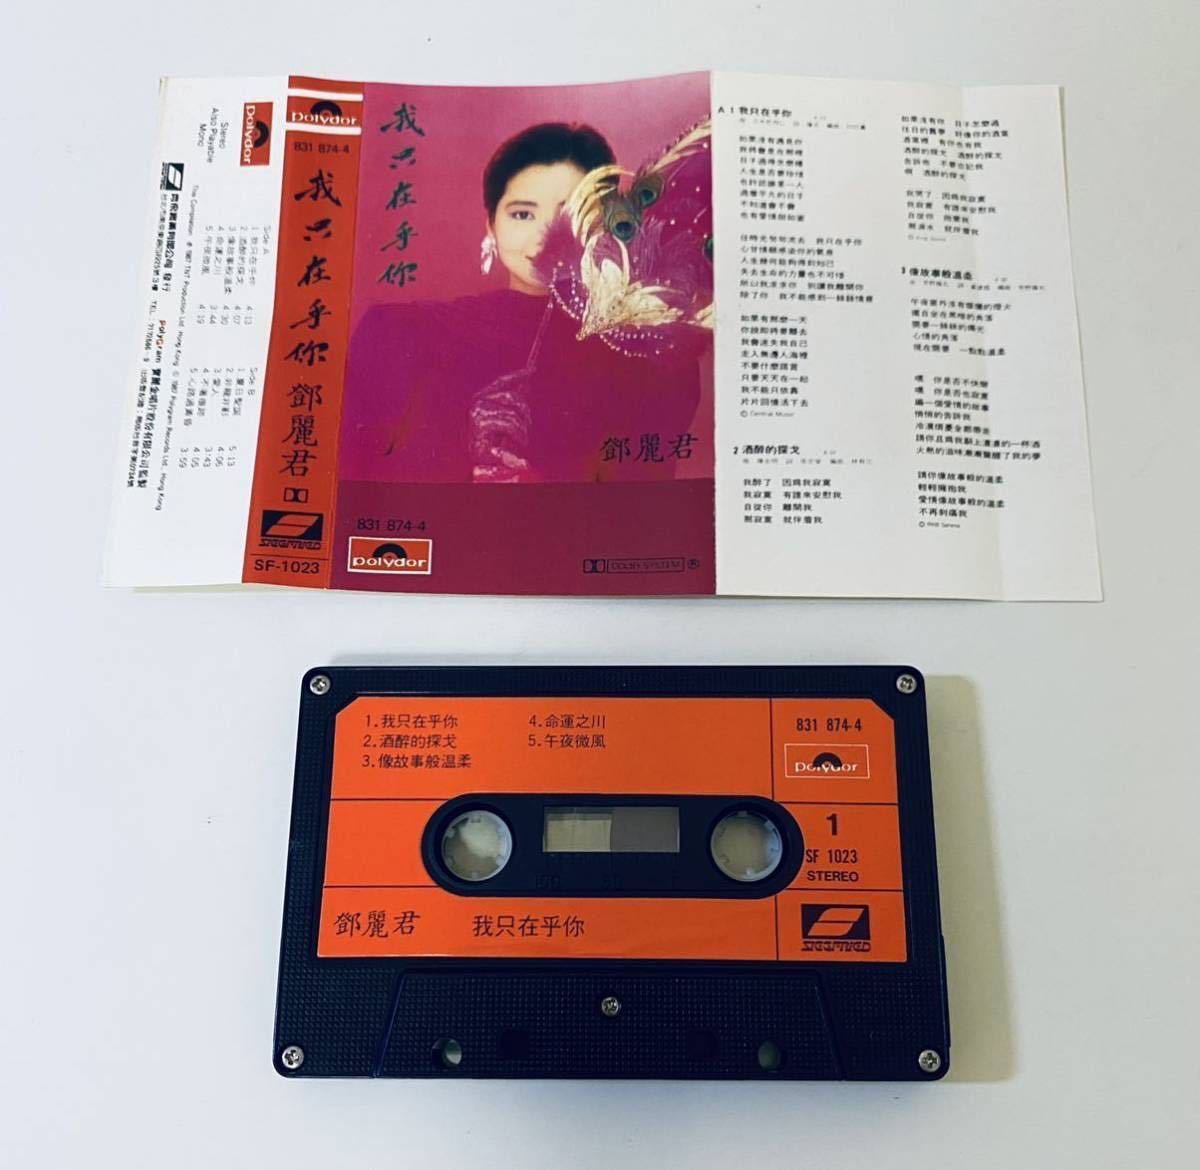 【鄧麗君 我只在乎尓(齊飛 台湾版)】テレサテン/カセットテープ/Teresa Teng/cassette/香港/Hong Kong/台湾/Taiwan/TeresaTeng_画像2